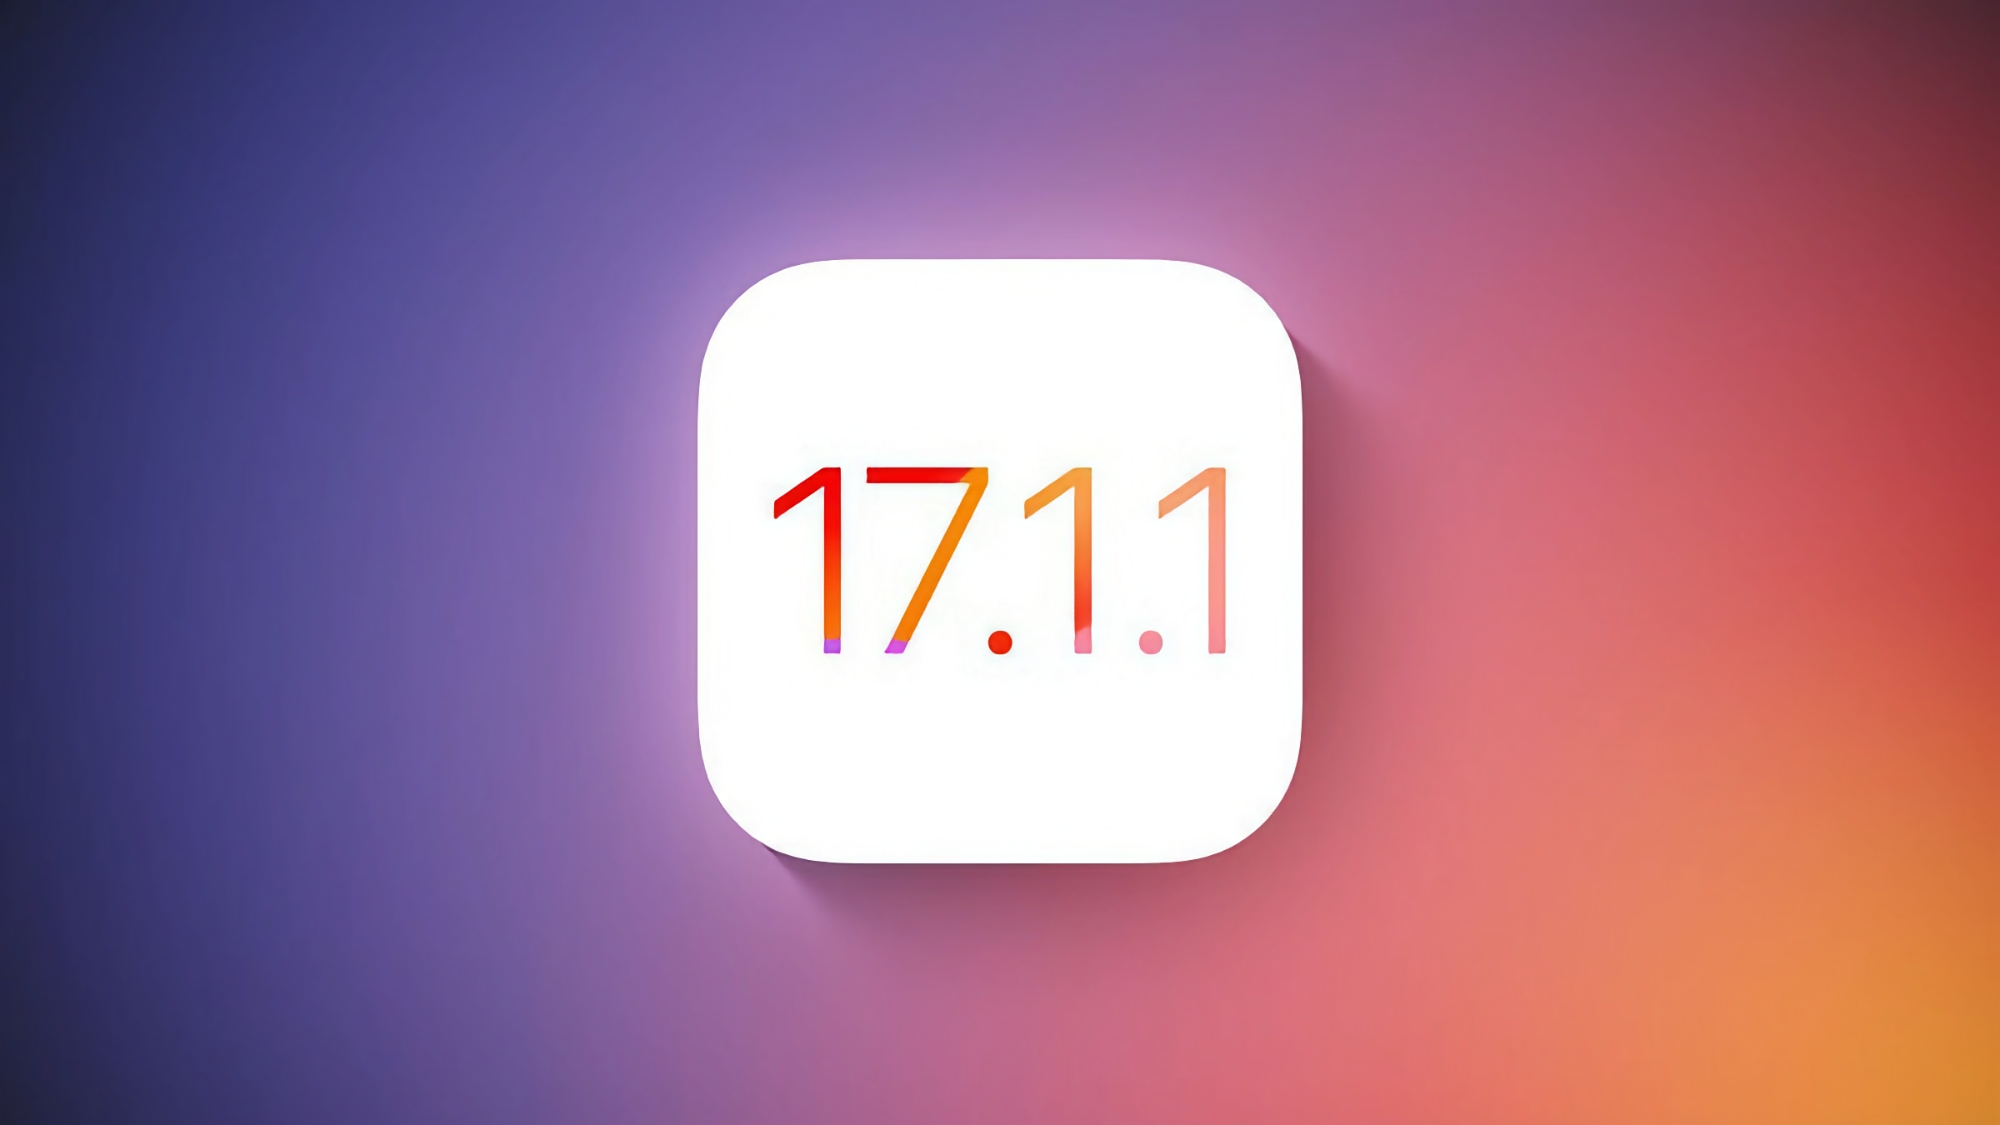 Apple frigiver iOS 17.1.1.1 til iPhone i denne uge, med fejl rettet i systemet